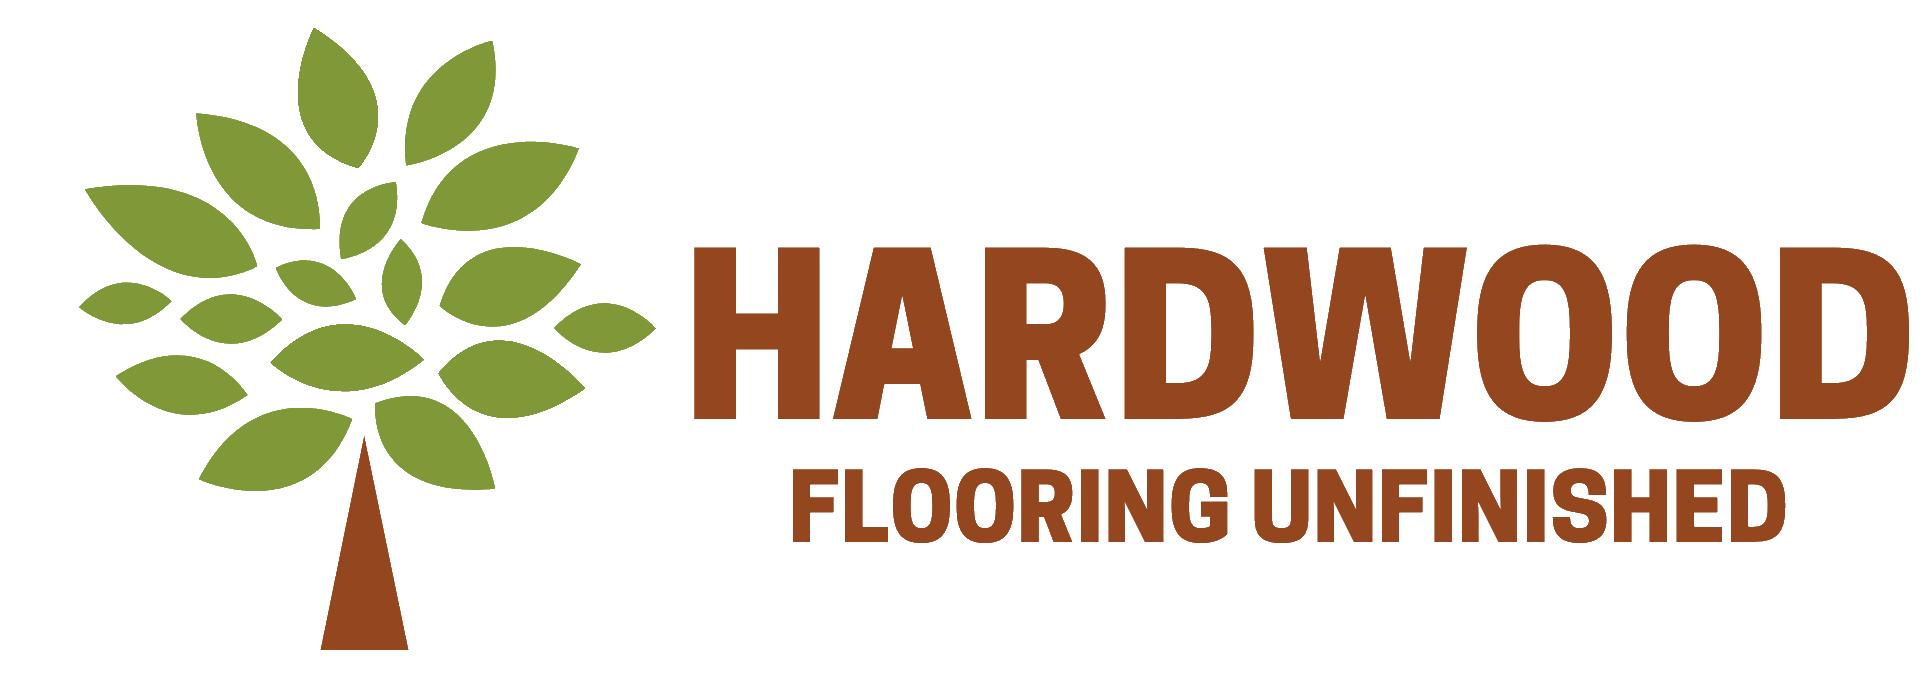 Hardwood Flooring UNFINISHED